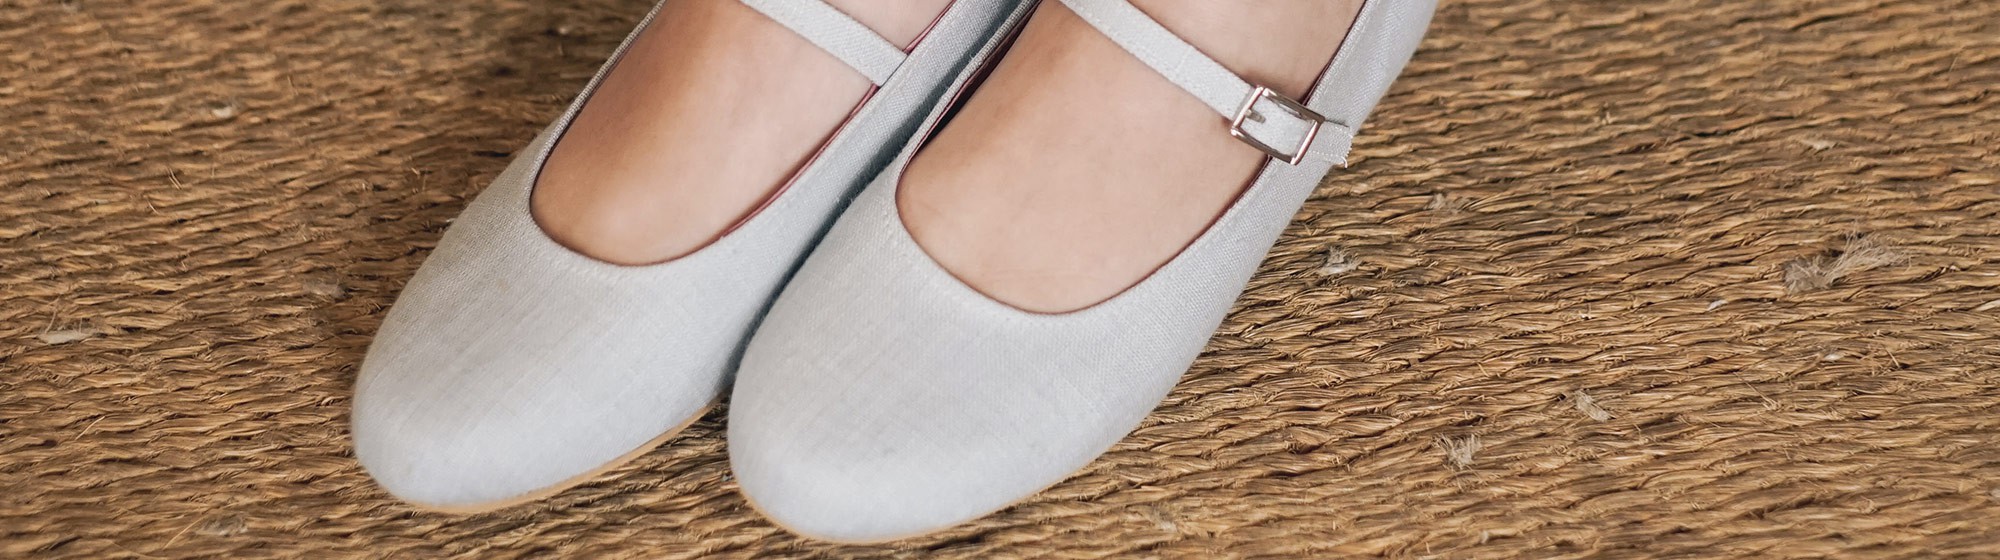 Manoletinas Mujer Con Cuña Beige — Zapatos Calzados Germans